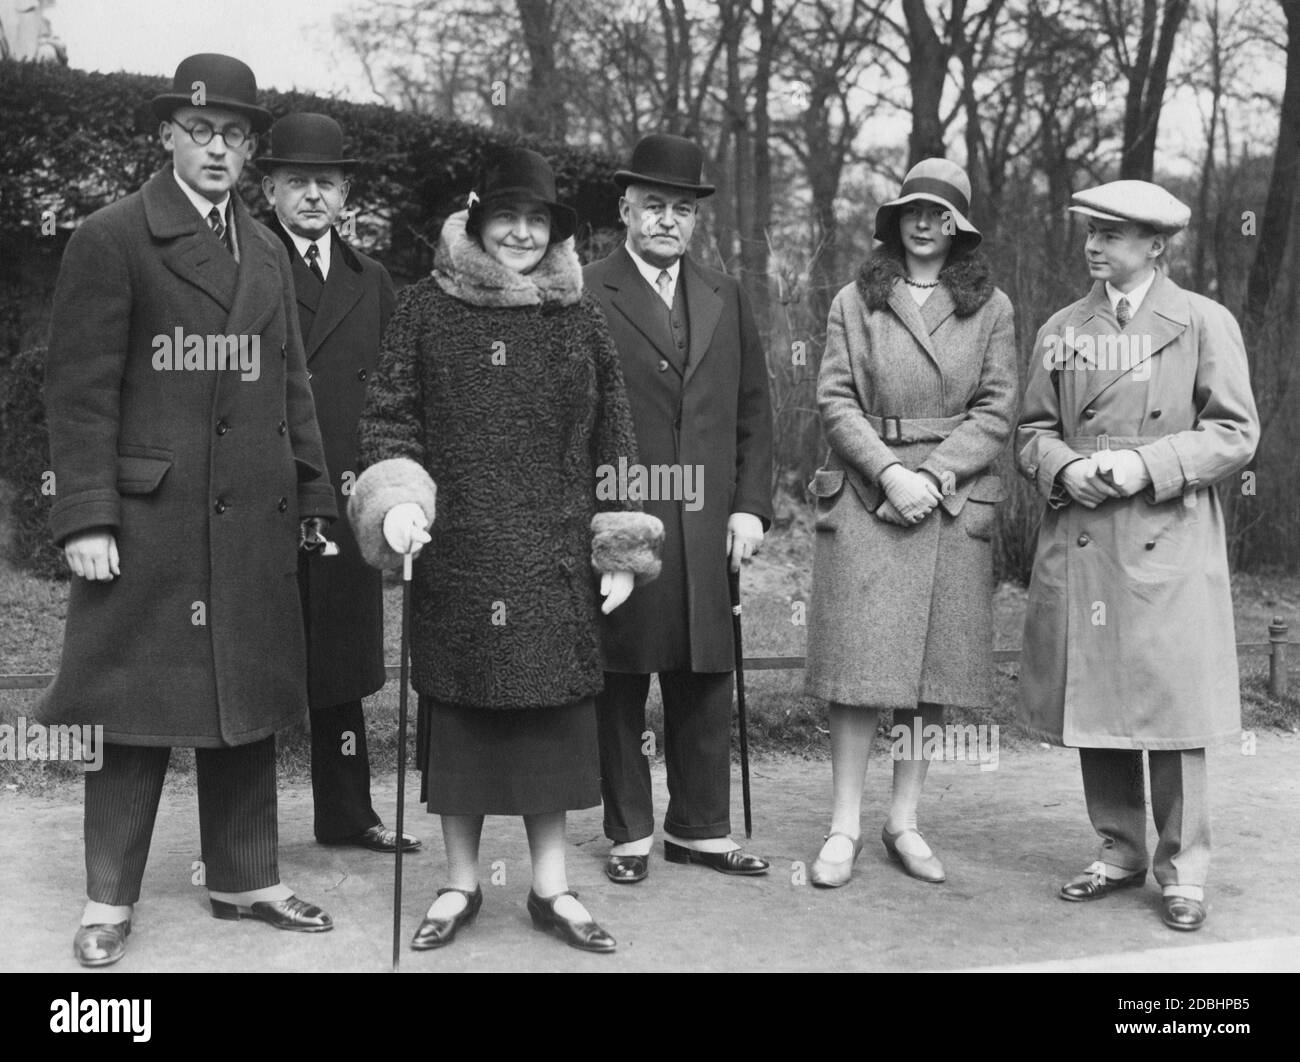 From left to right: Prince Hans Georg von Schoenaich-Carolath, Colonel von  Giese, Hermine Reuss Elder Line (second wife of Emperor Wilhelm II), a man,  Princess Hermine Karoline von Schoenaich-Carolath and Prince Ferdinand